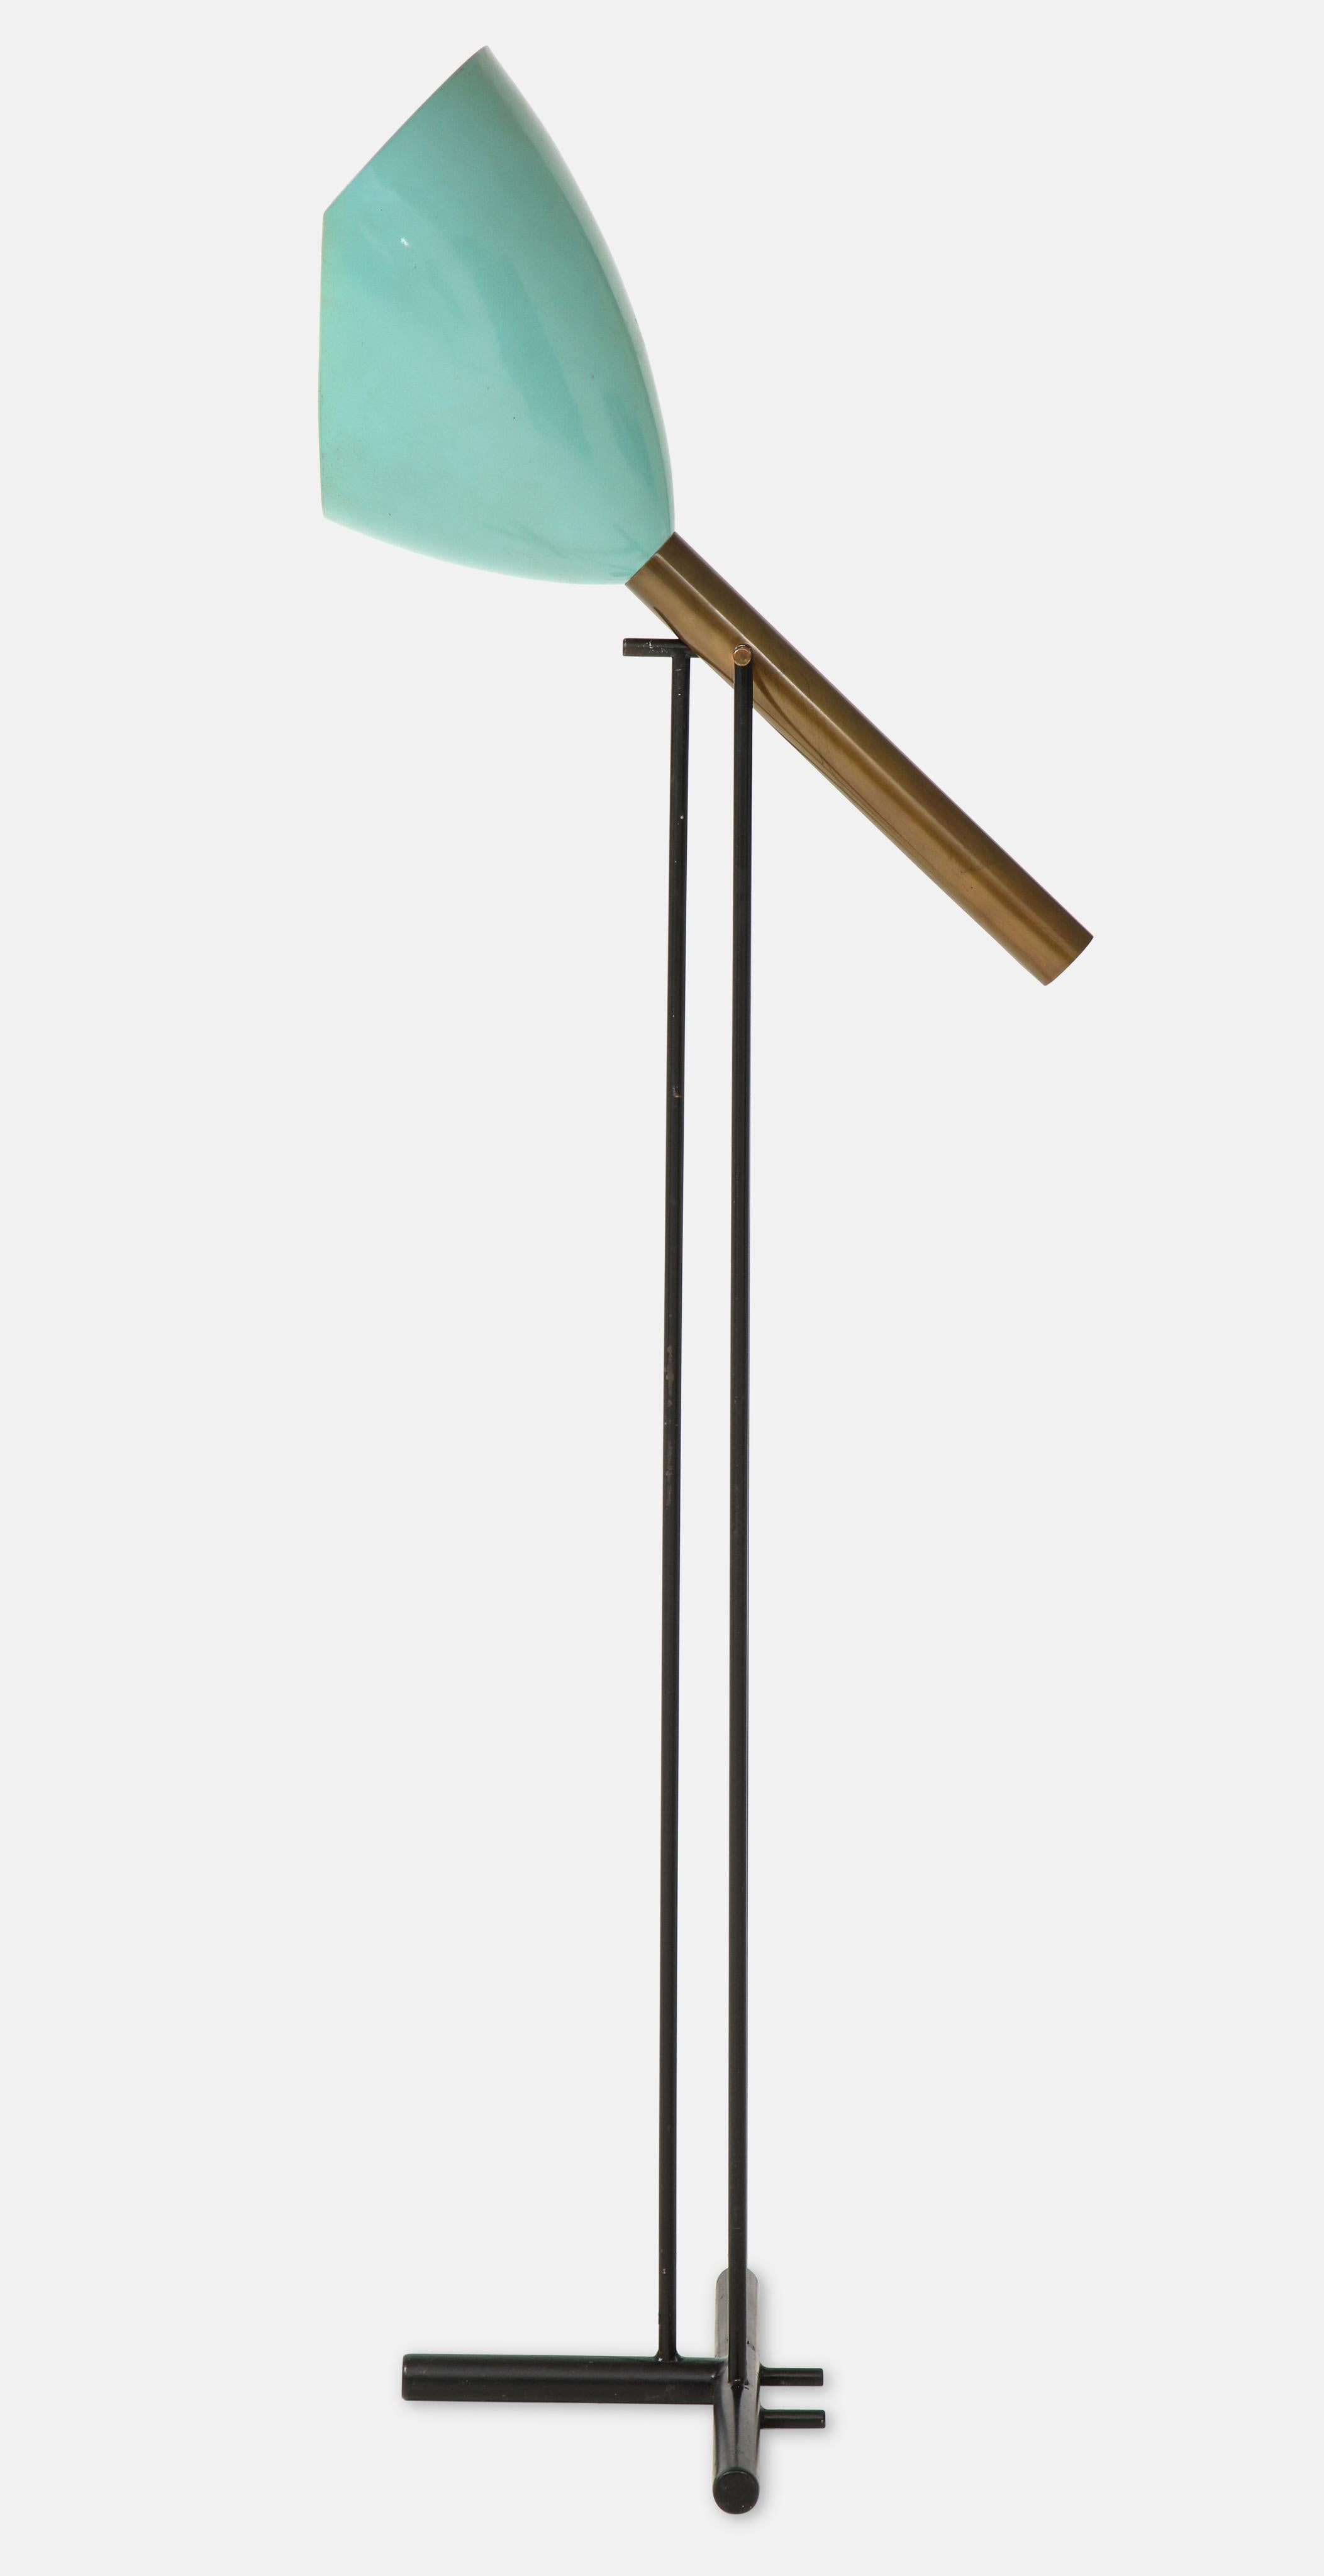 Angelo Lelii for Arredoluce rare floor lamp model 12627 